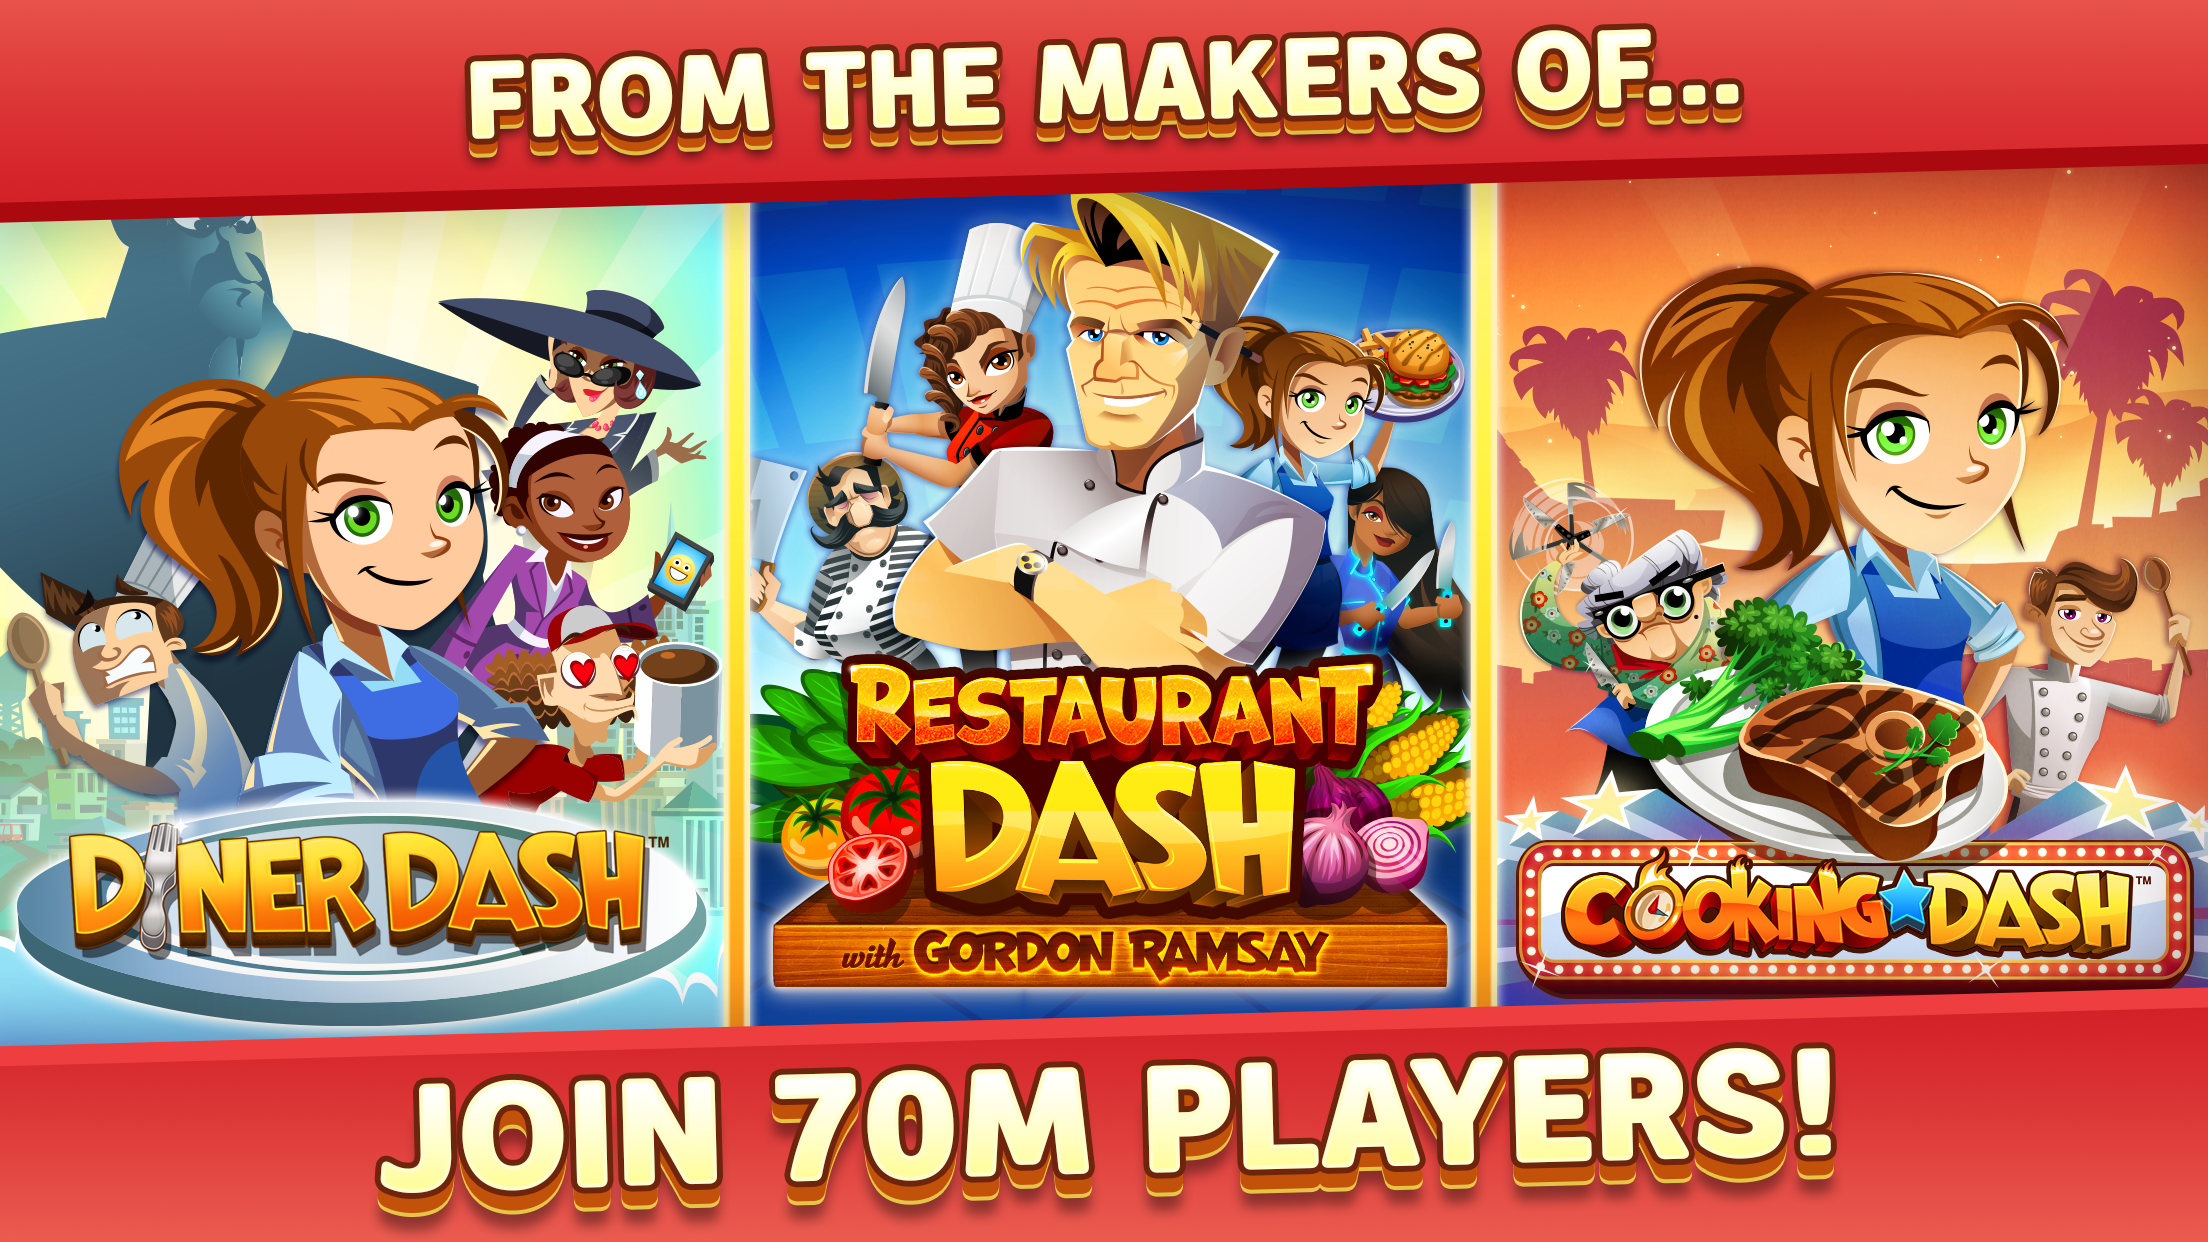 Diner Dash - Old Games Download